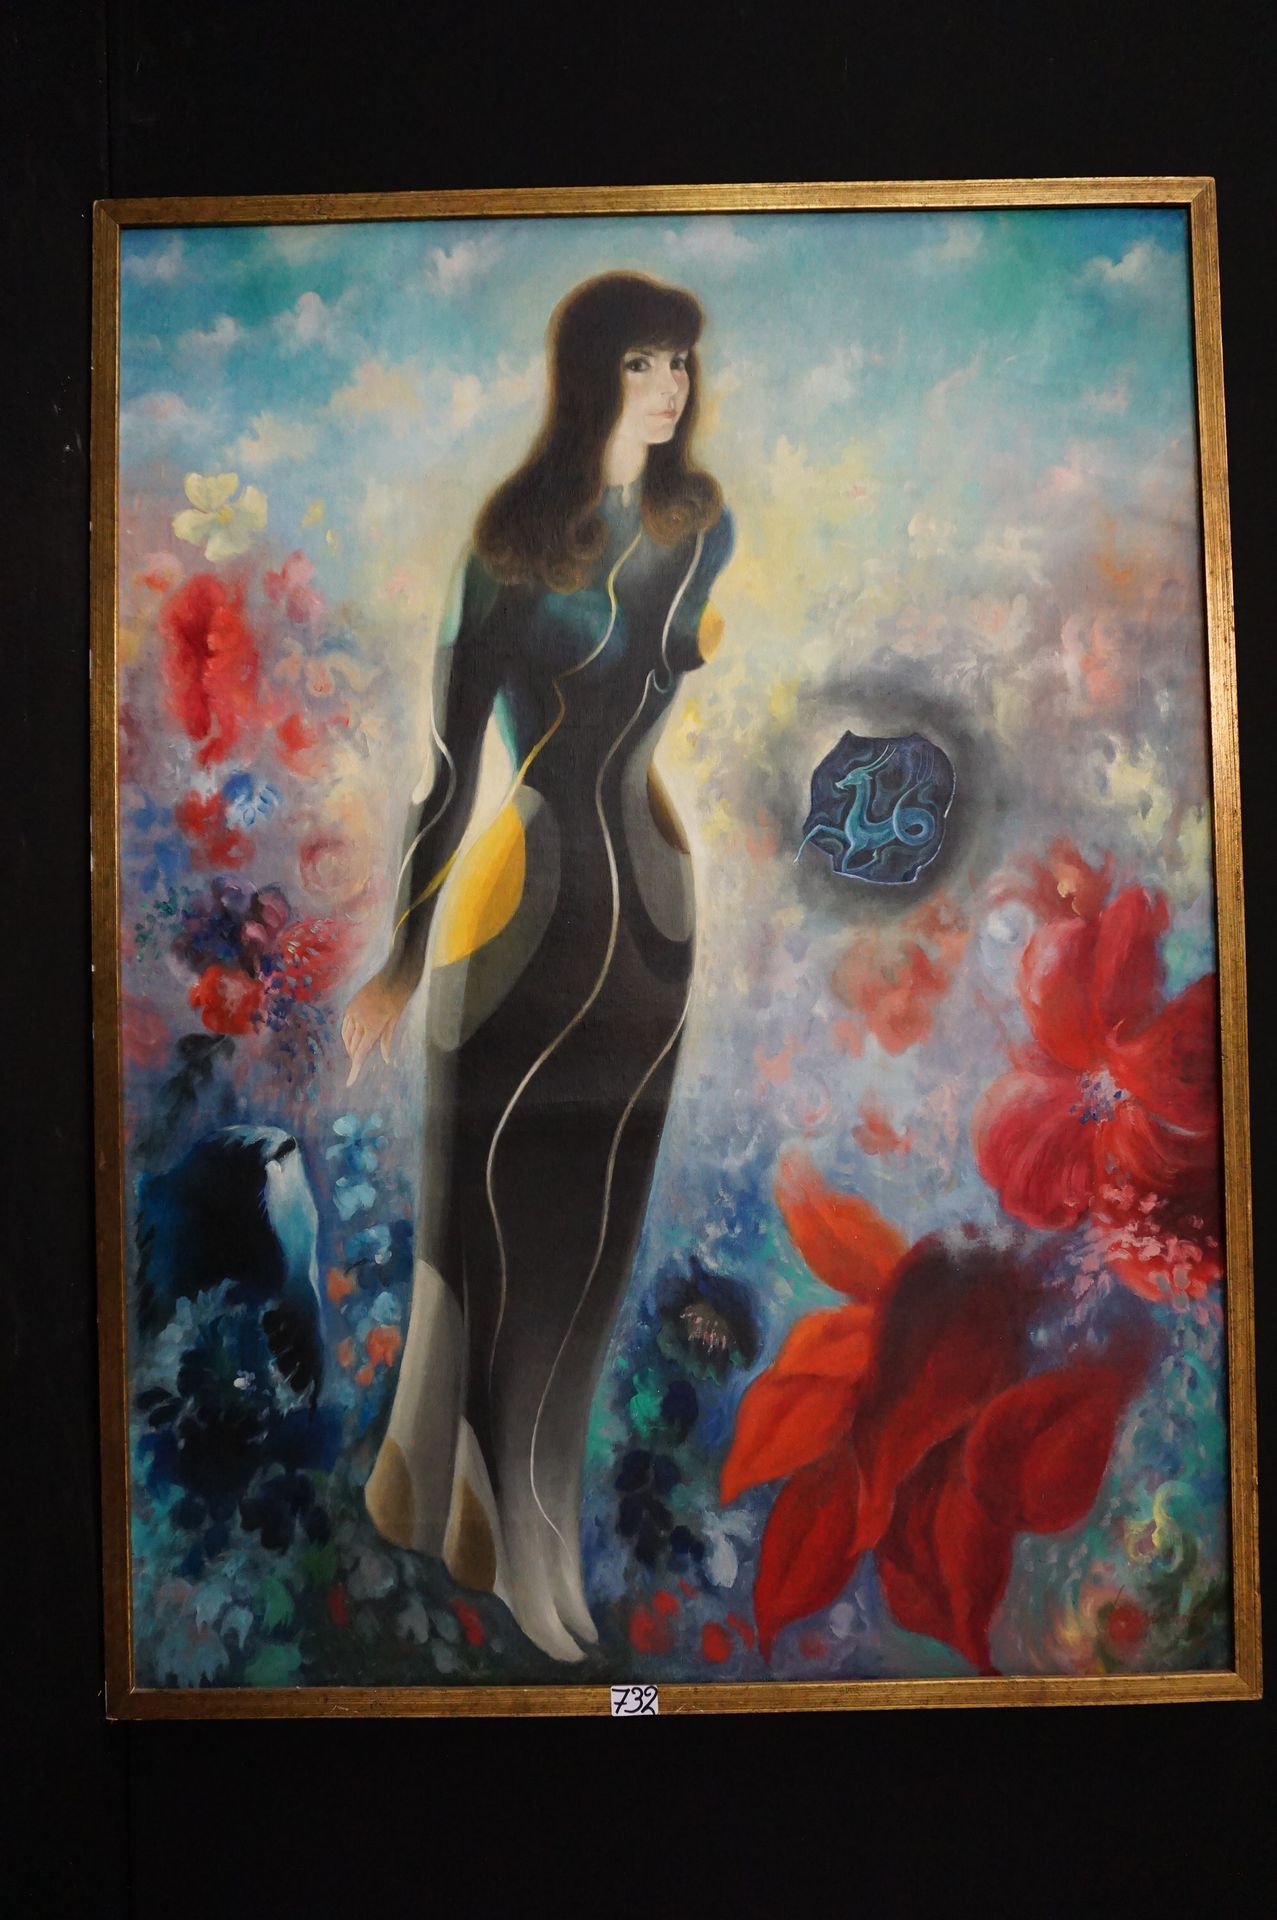 FRANCINEY "Jeune femme" - Huile sur toile - Signé - 130 x 97 cm